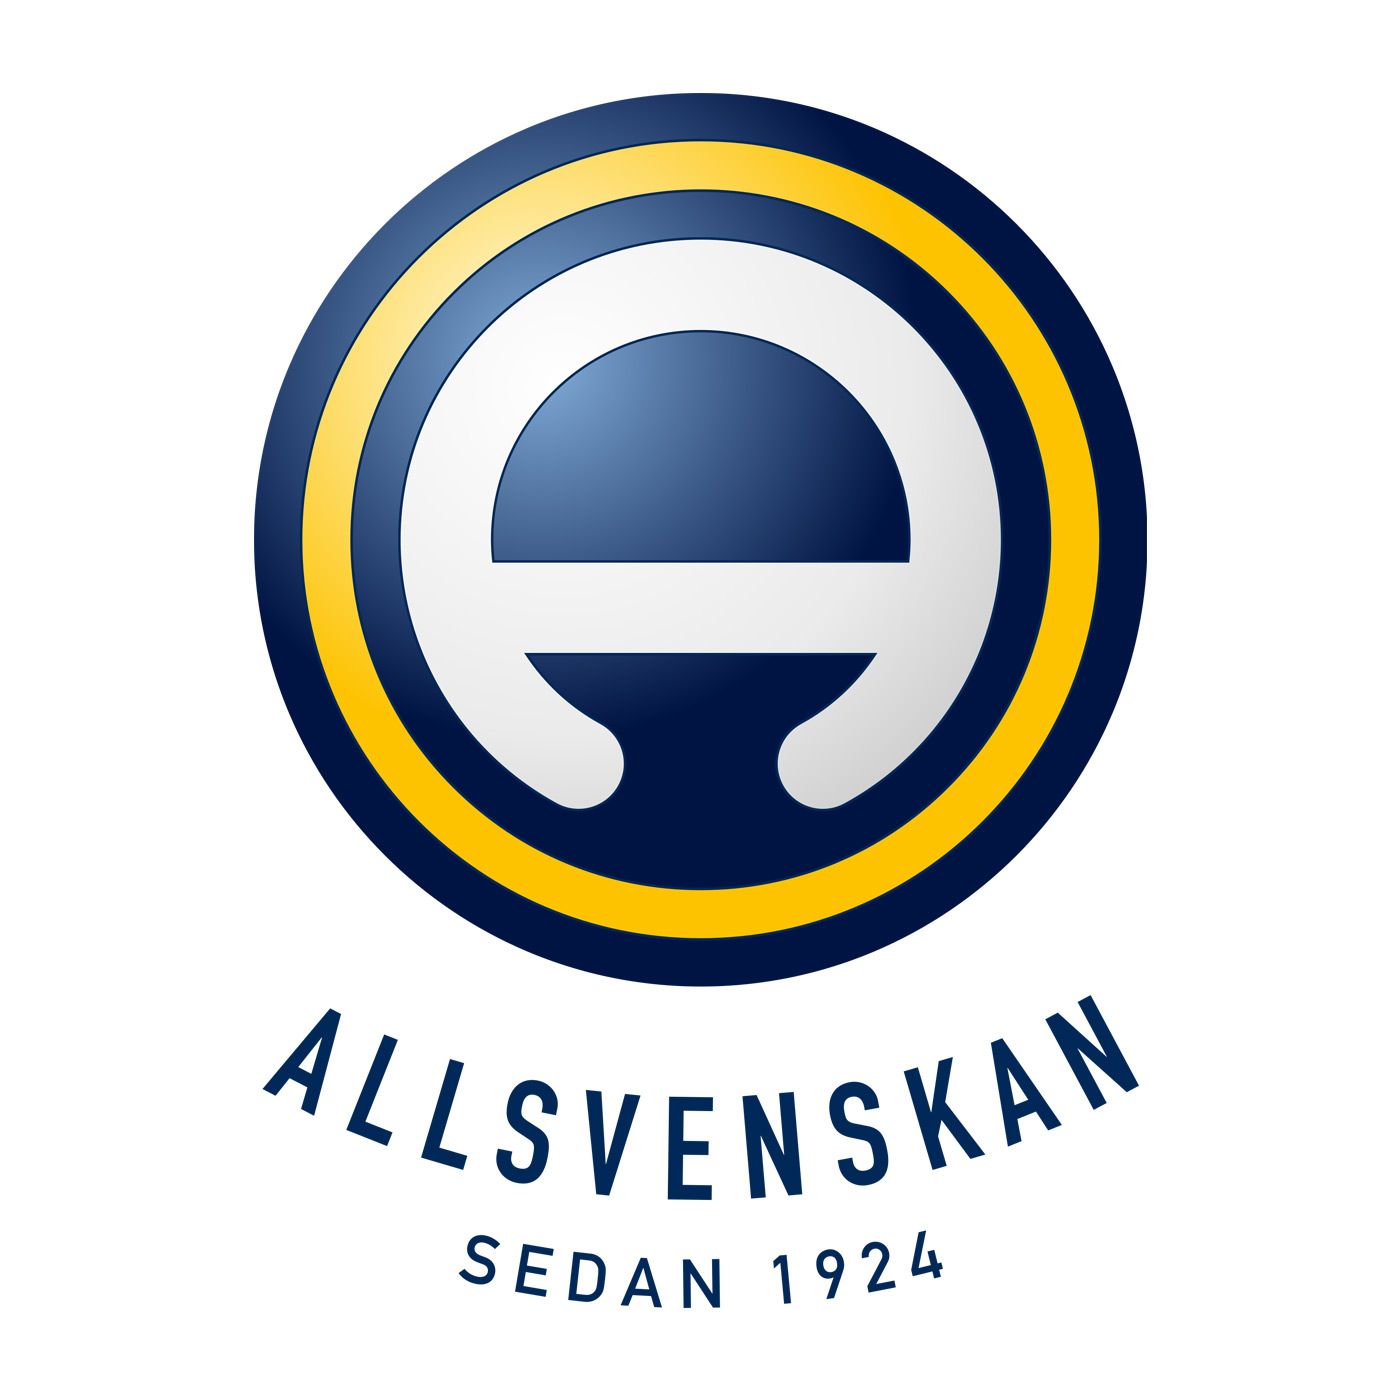 Allsvenskan logga